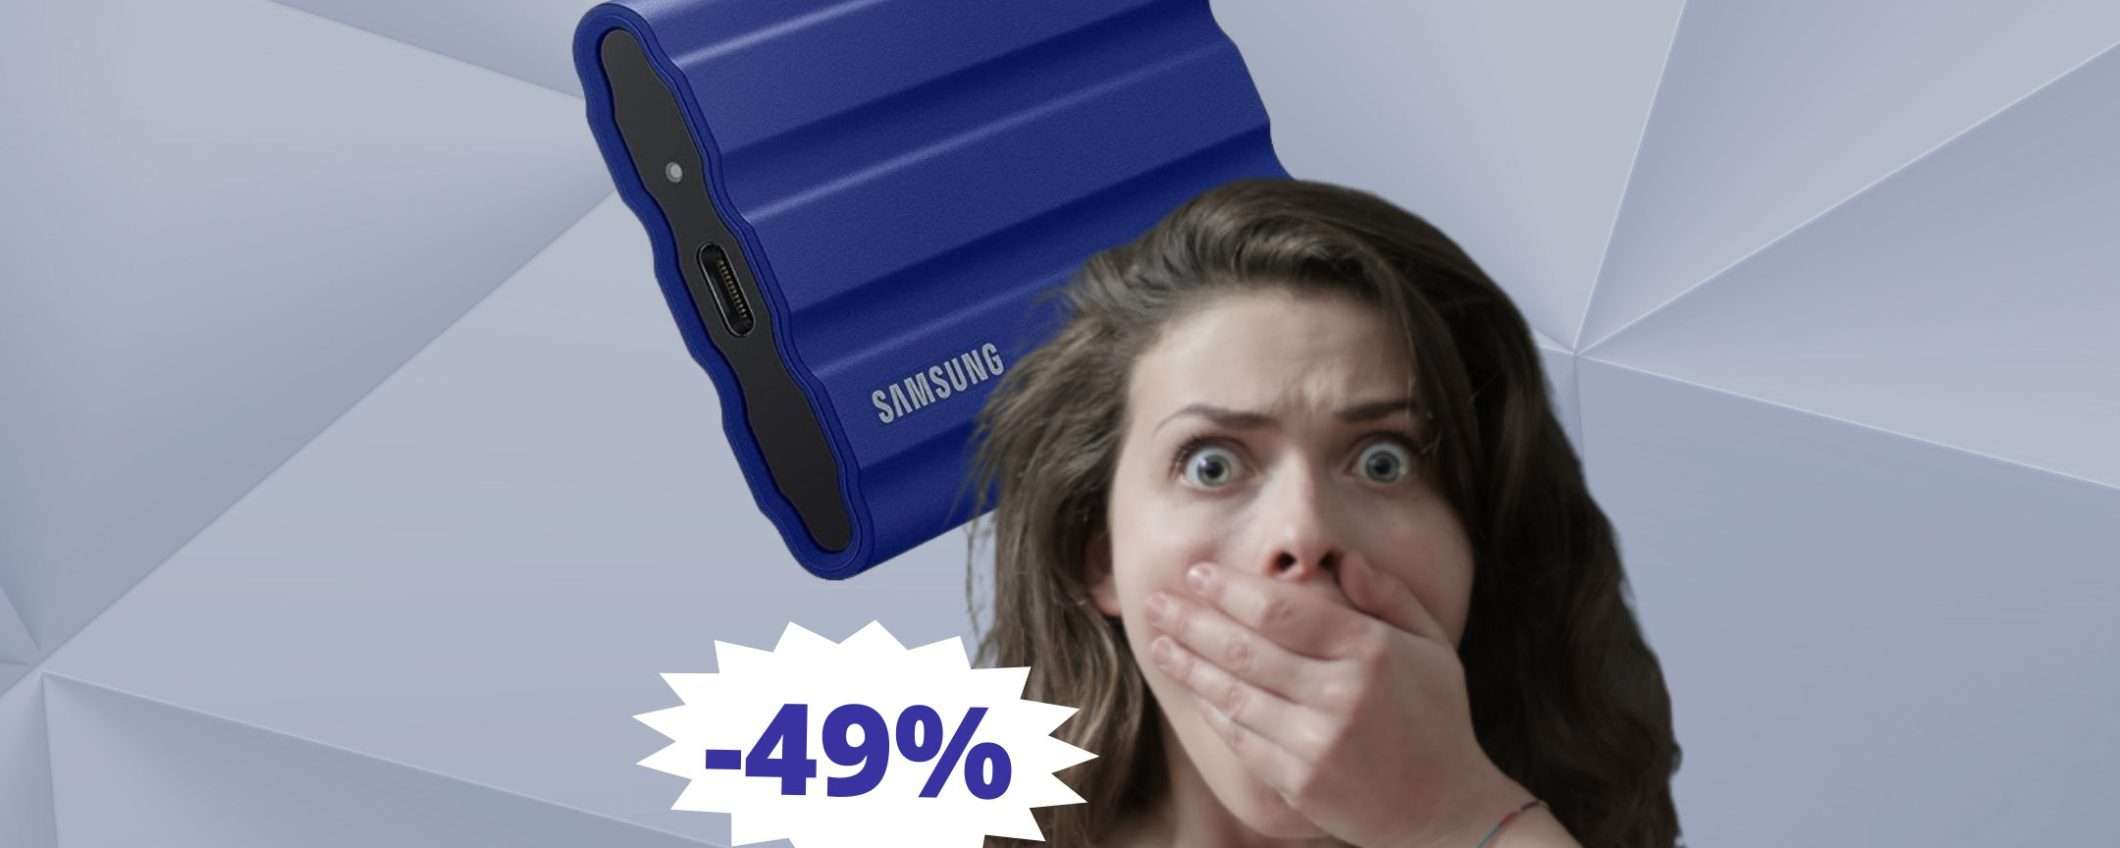 SSD Samsung Memorie T7: AFFARE imperdibile su Amazon (-49%)